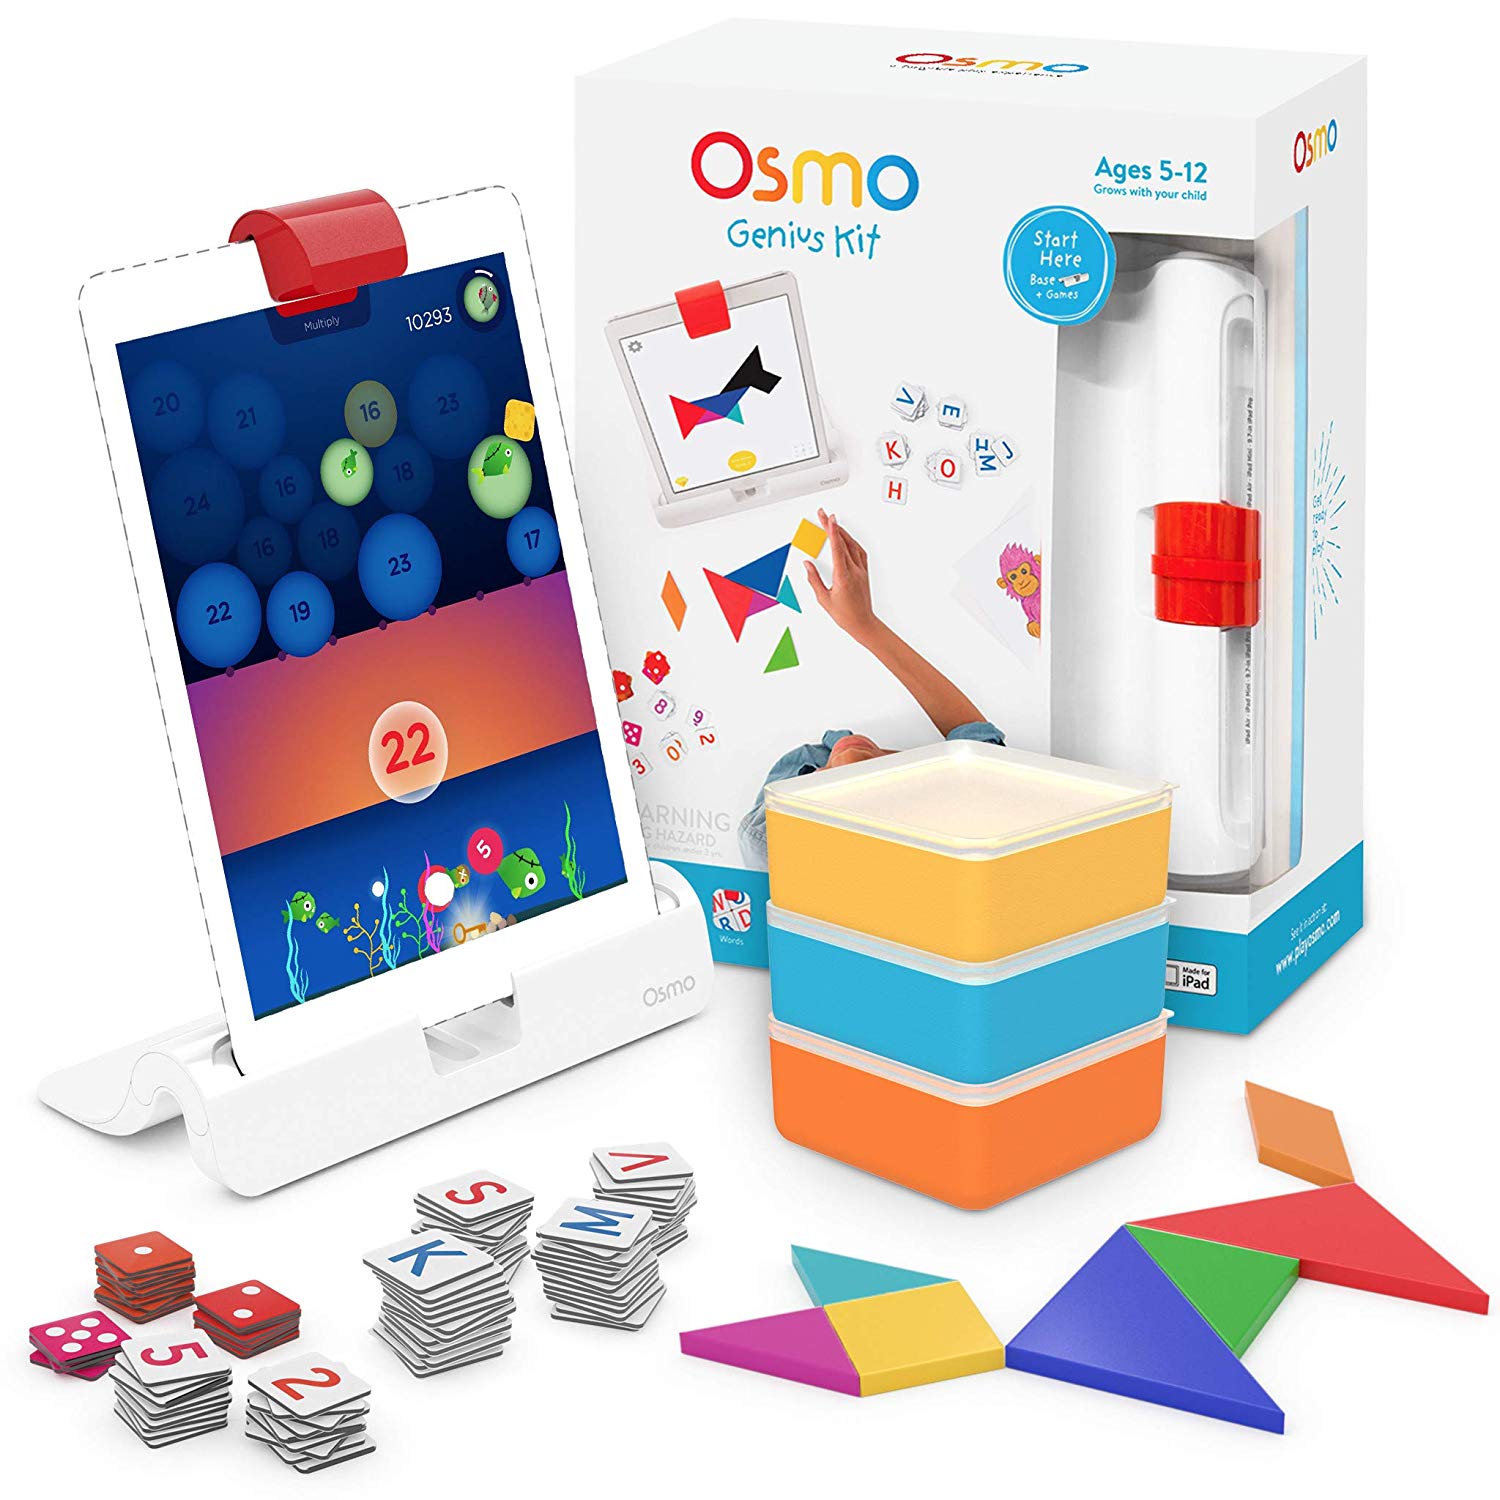 Osmo Genius Kit for iPad 2